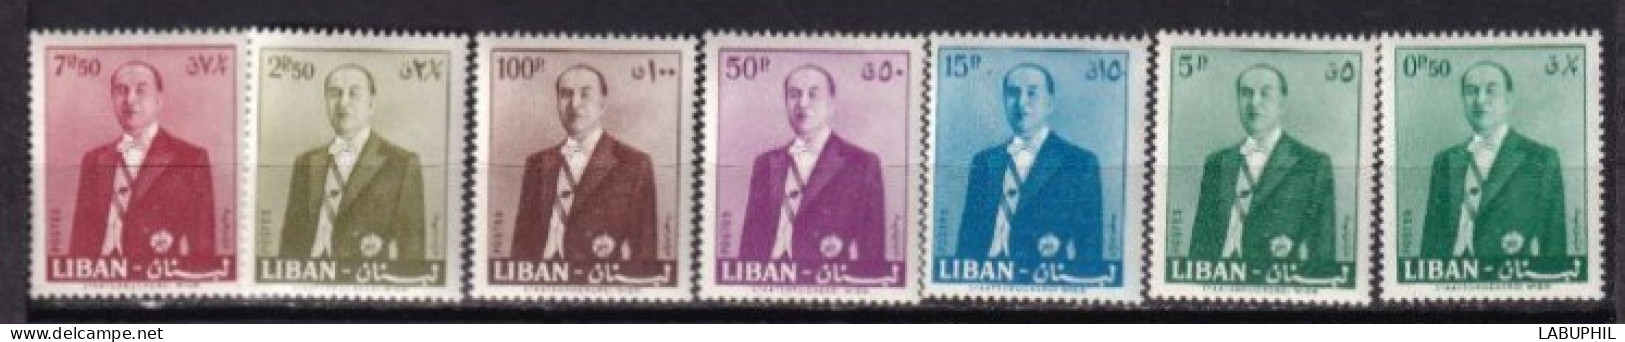 LIBAN MNH **  1960 - Liban